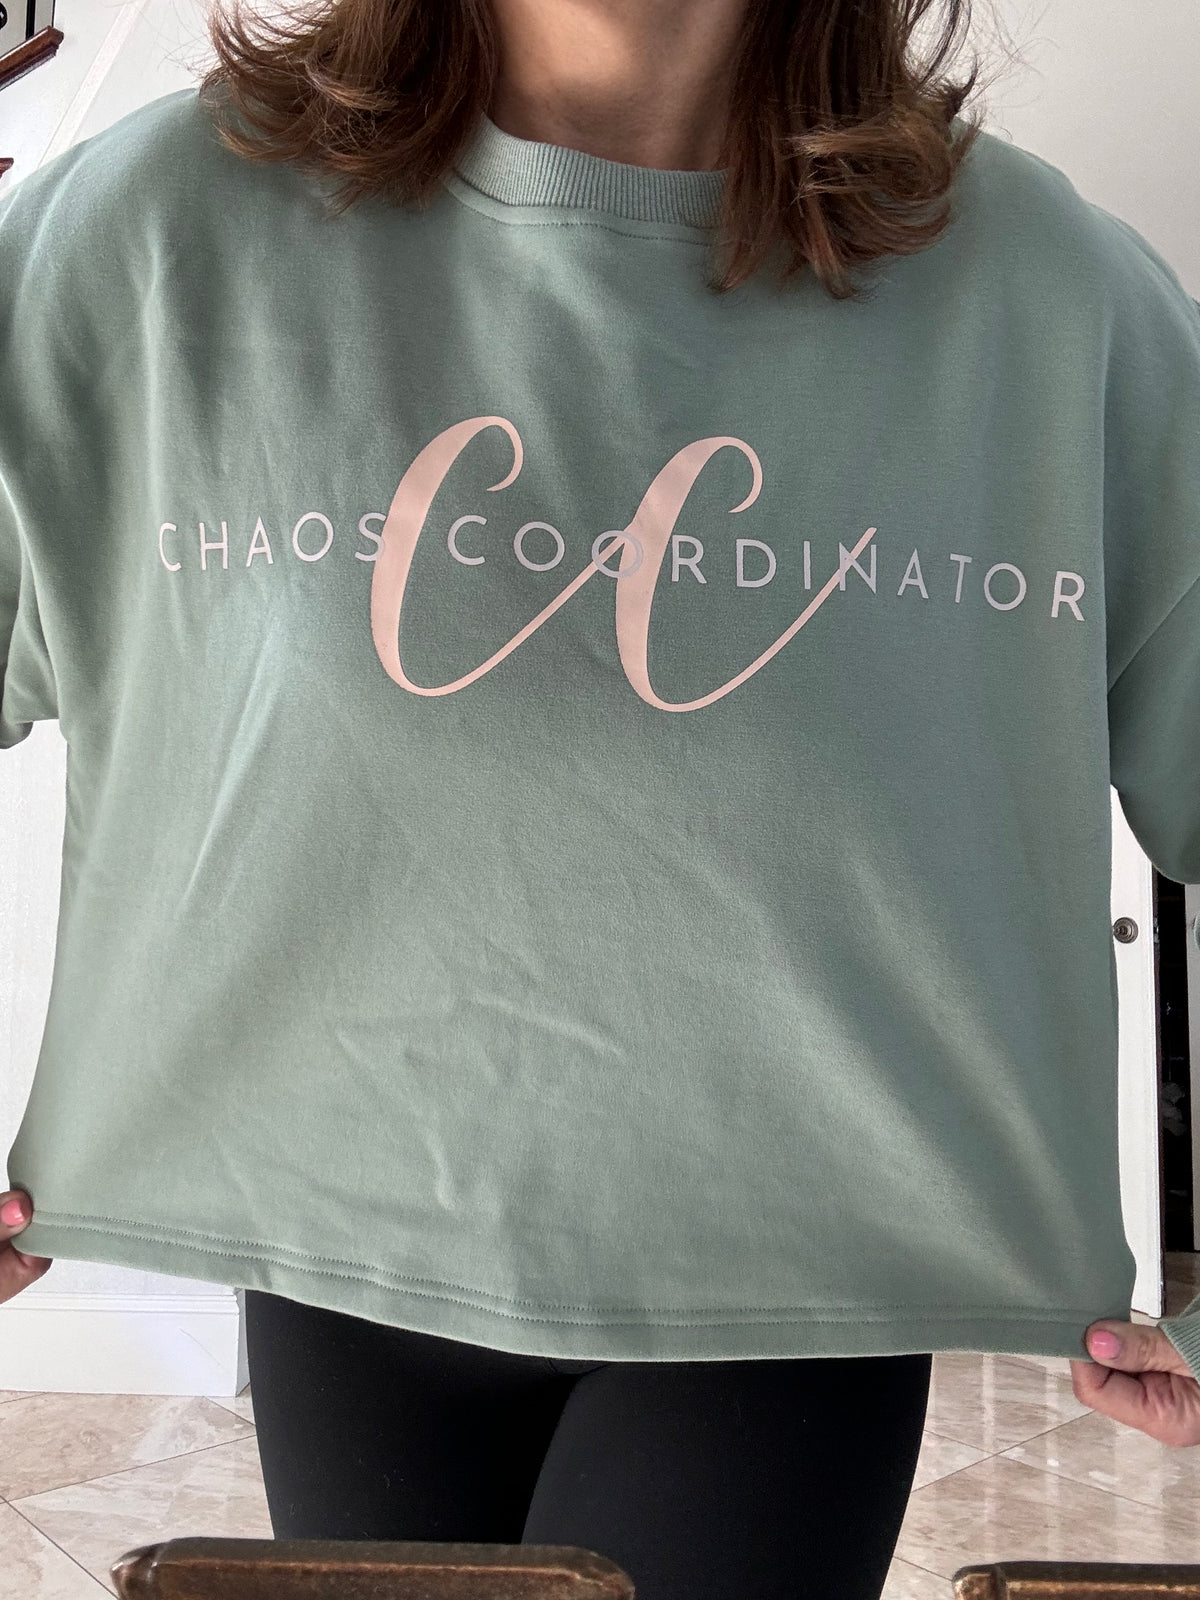 CC- Chaos Coordinator long sleeve sweatshirt